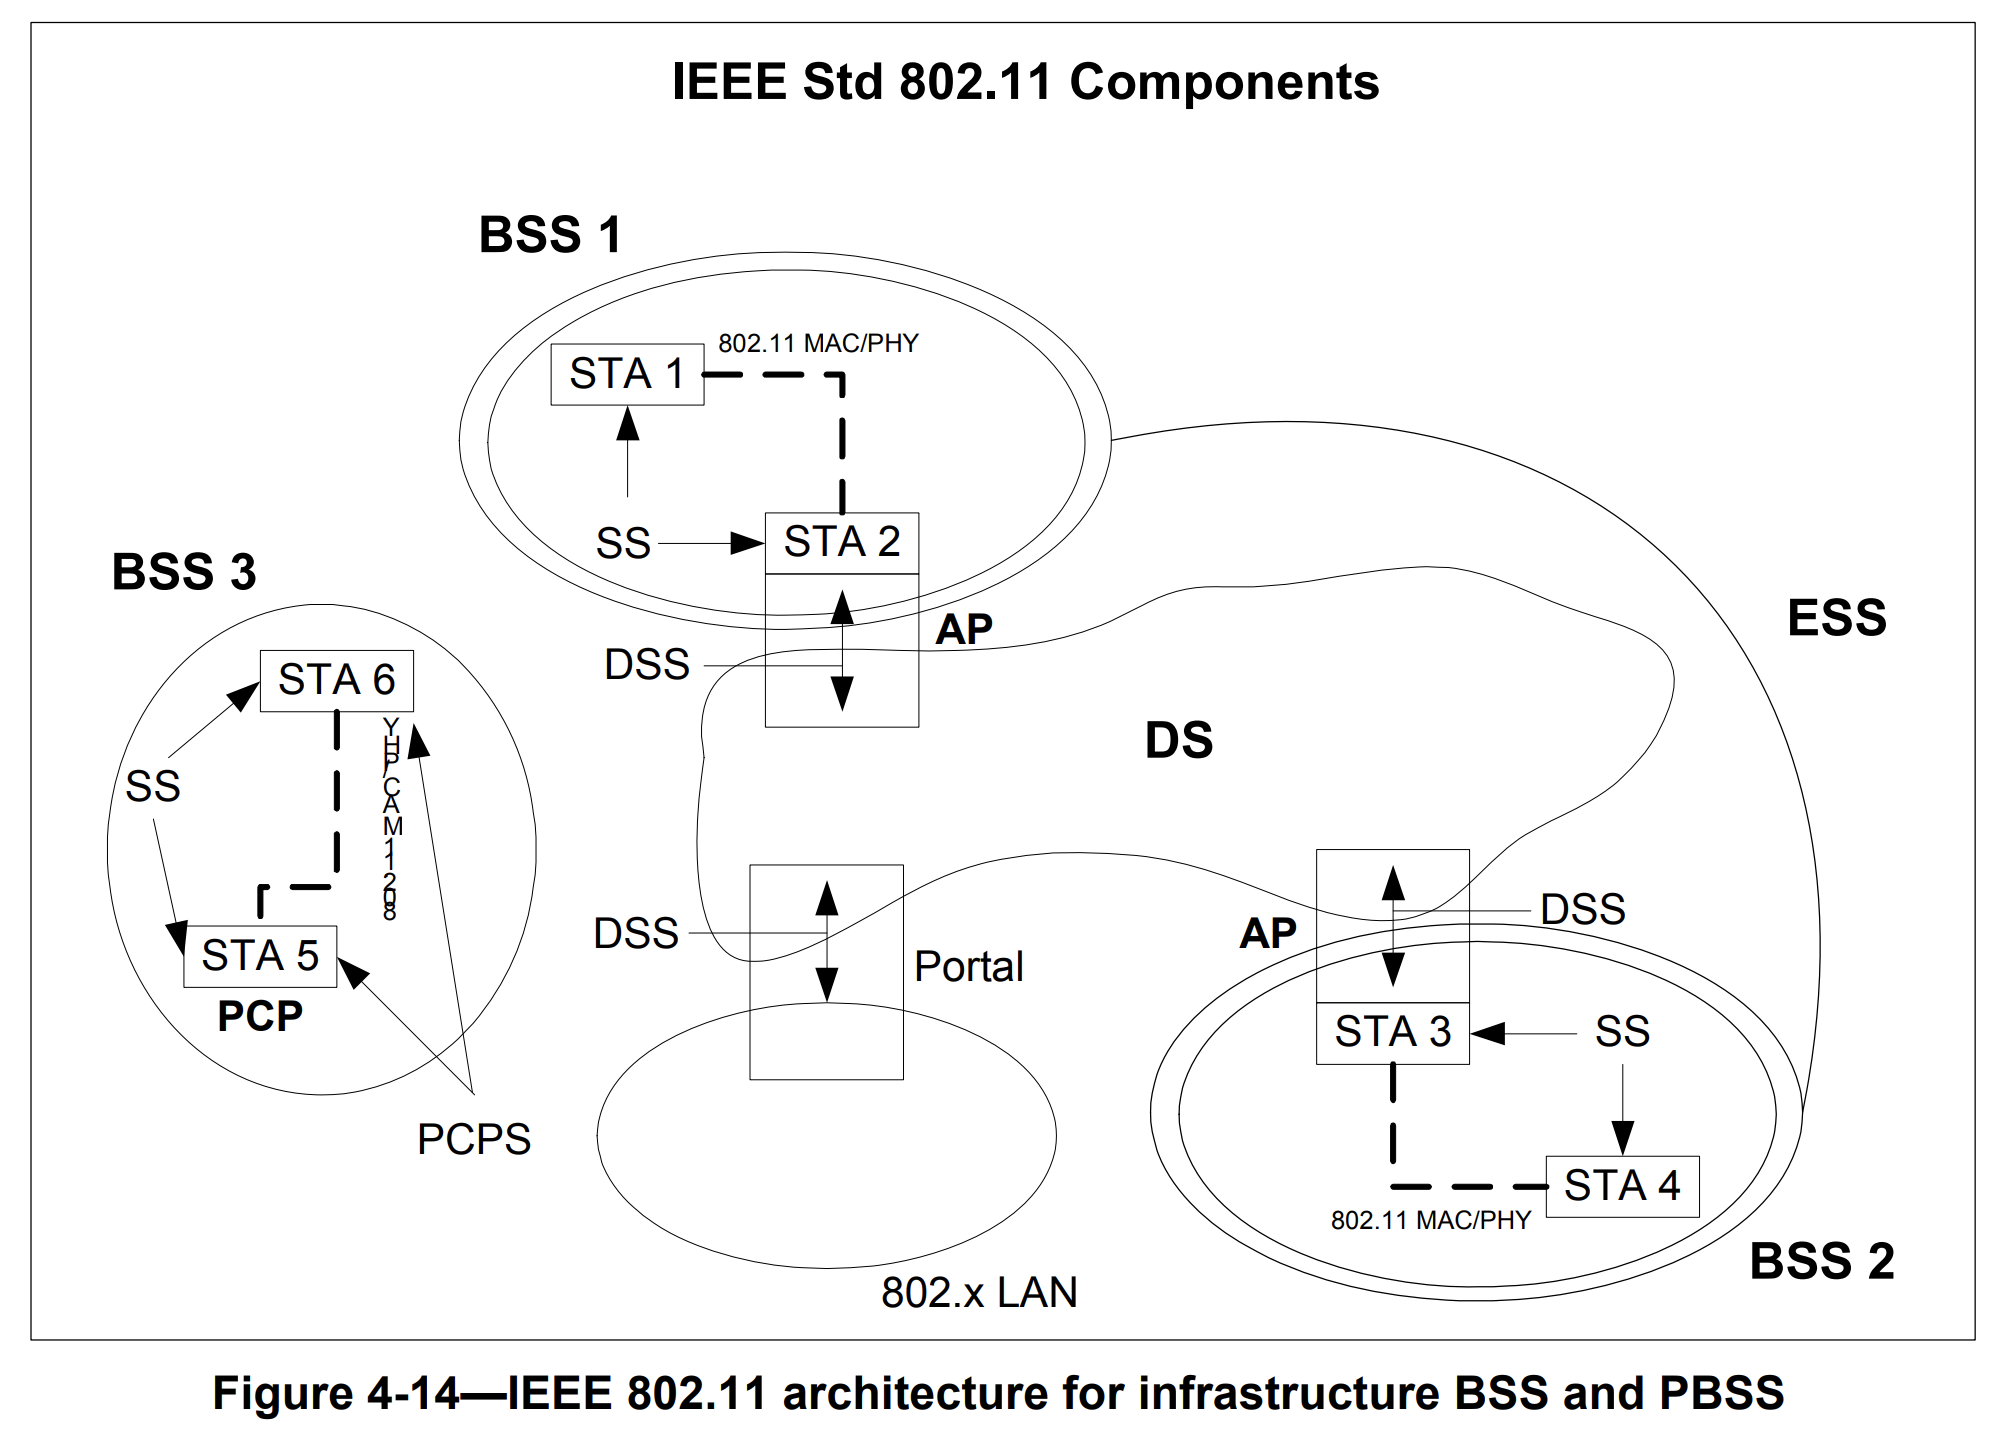 图 1-3 IEEE 802.11 完整架构